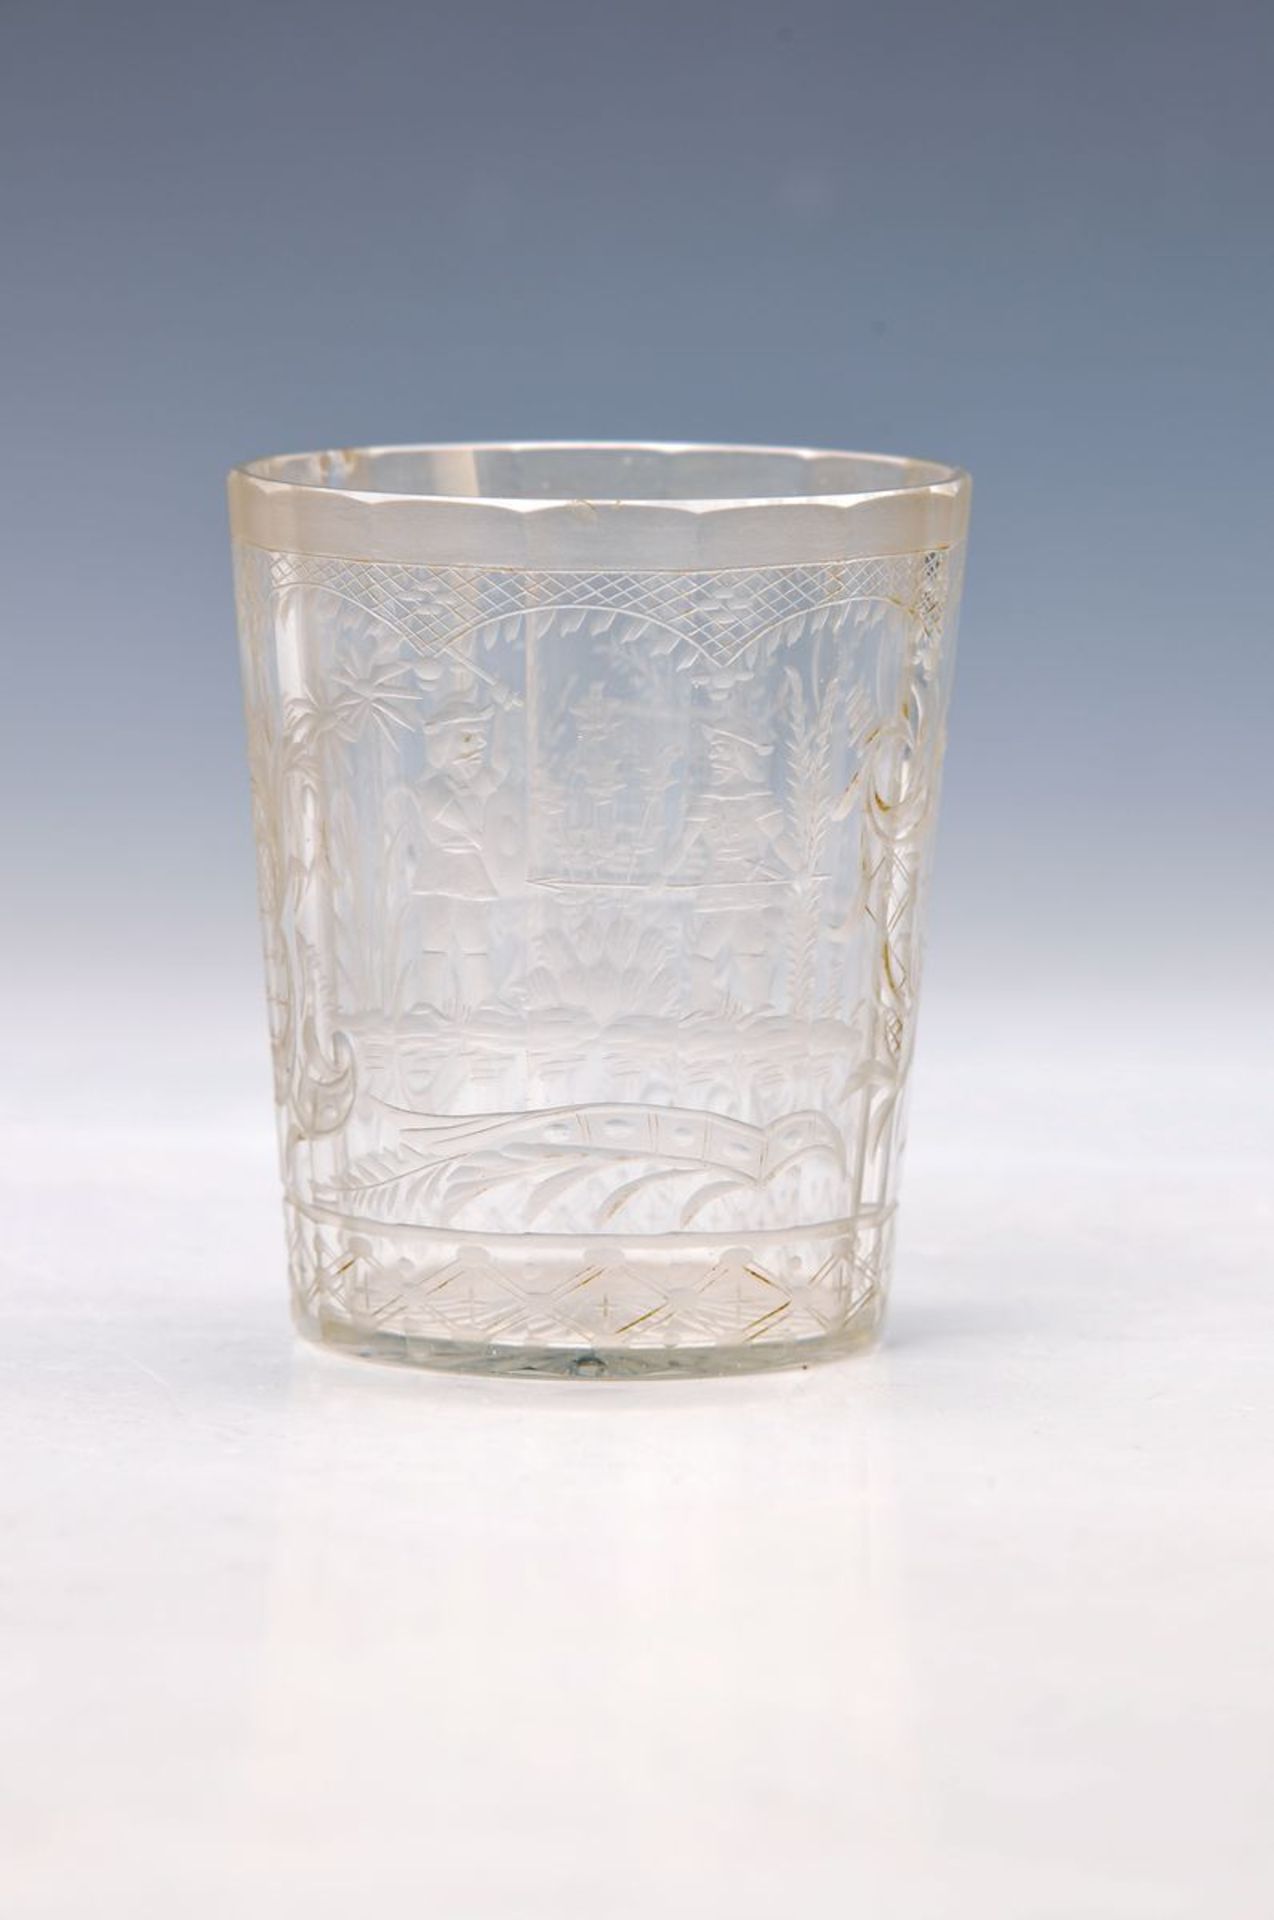 Becherglas, Böhmen, um 1790-1810, farbloses mundgeblasenes Glas, facettiert, umlaufend fein